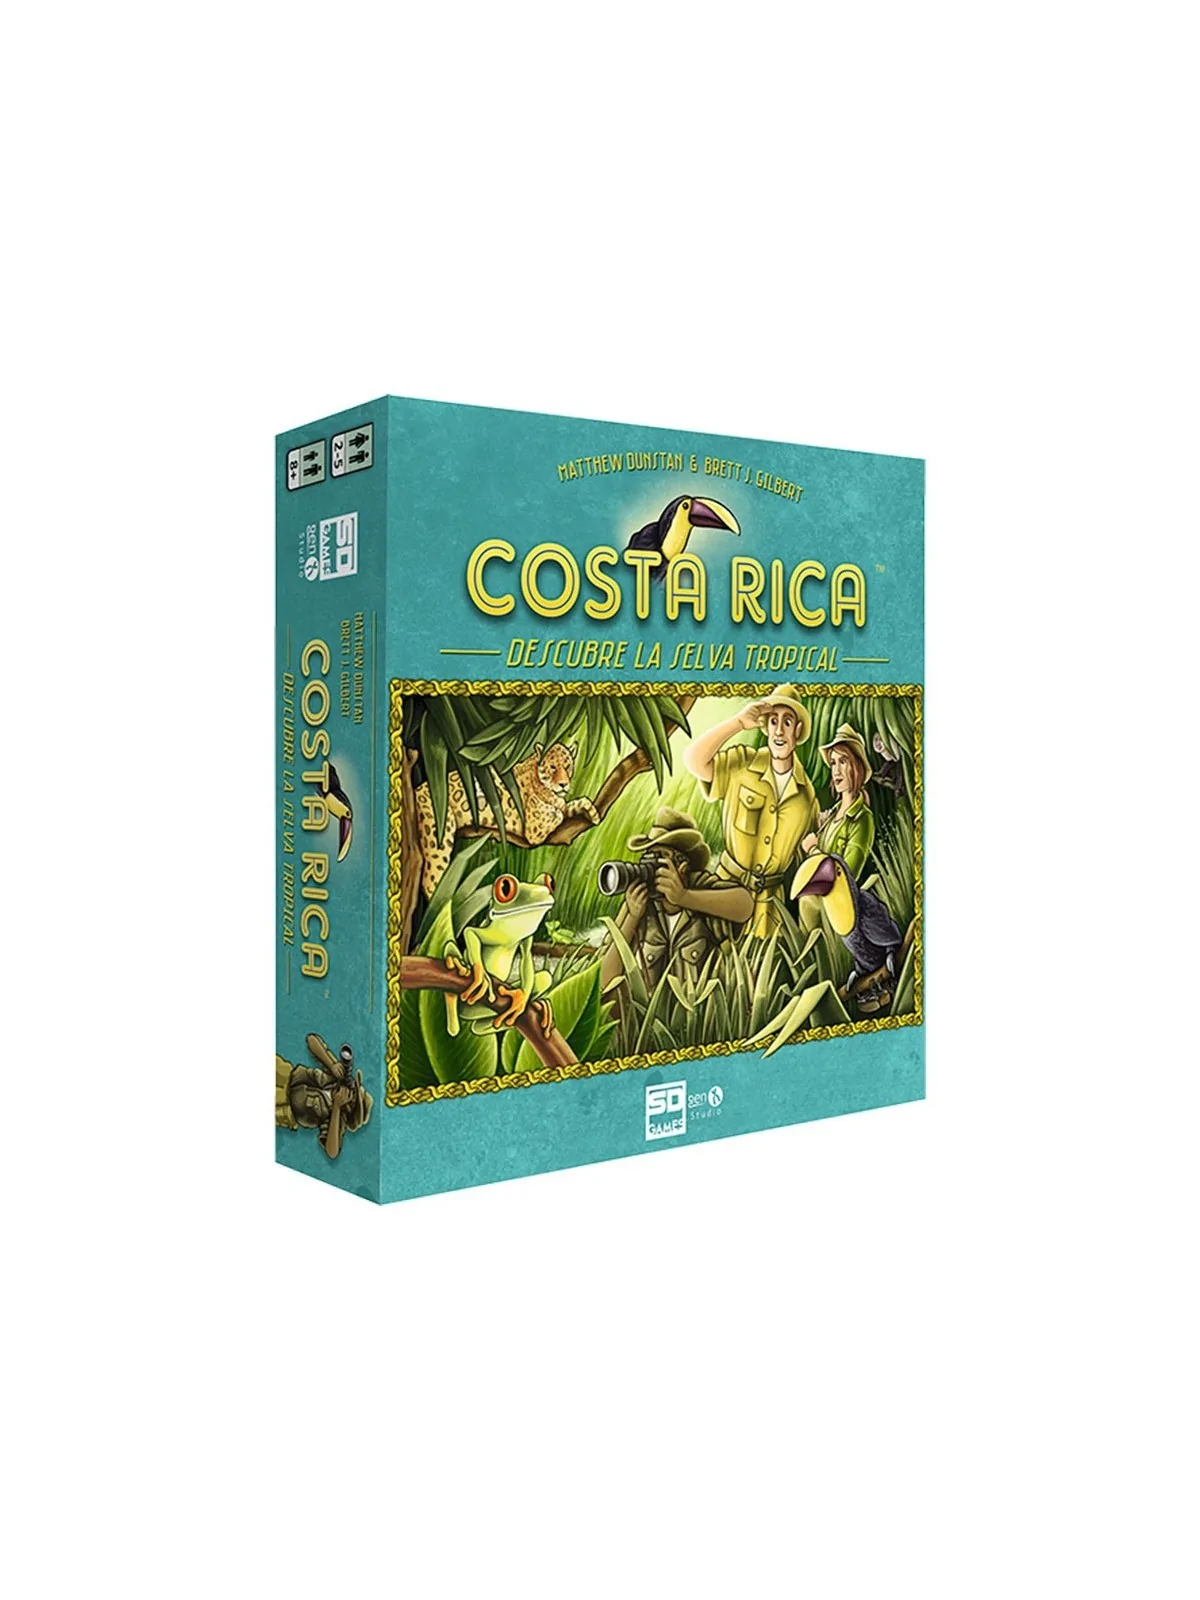 Comprar Costa Rica barato al mejor precio 22,46 € de SD GAMES